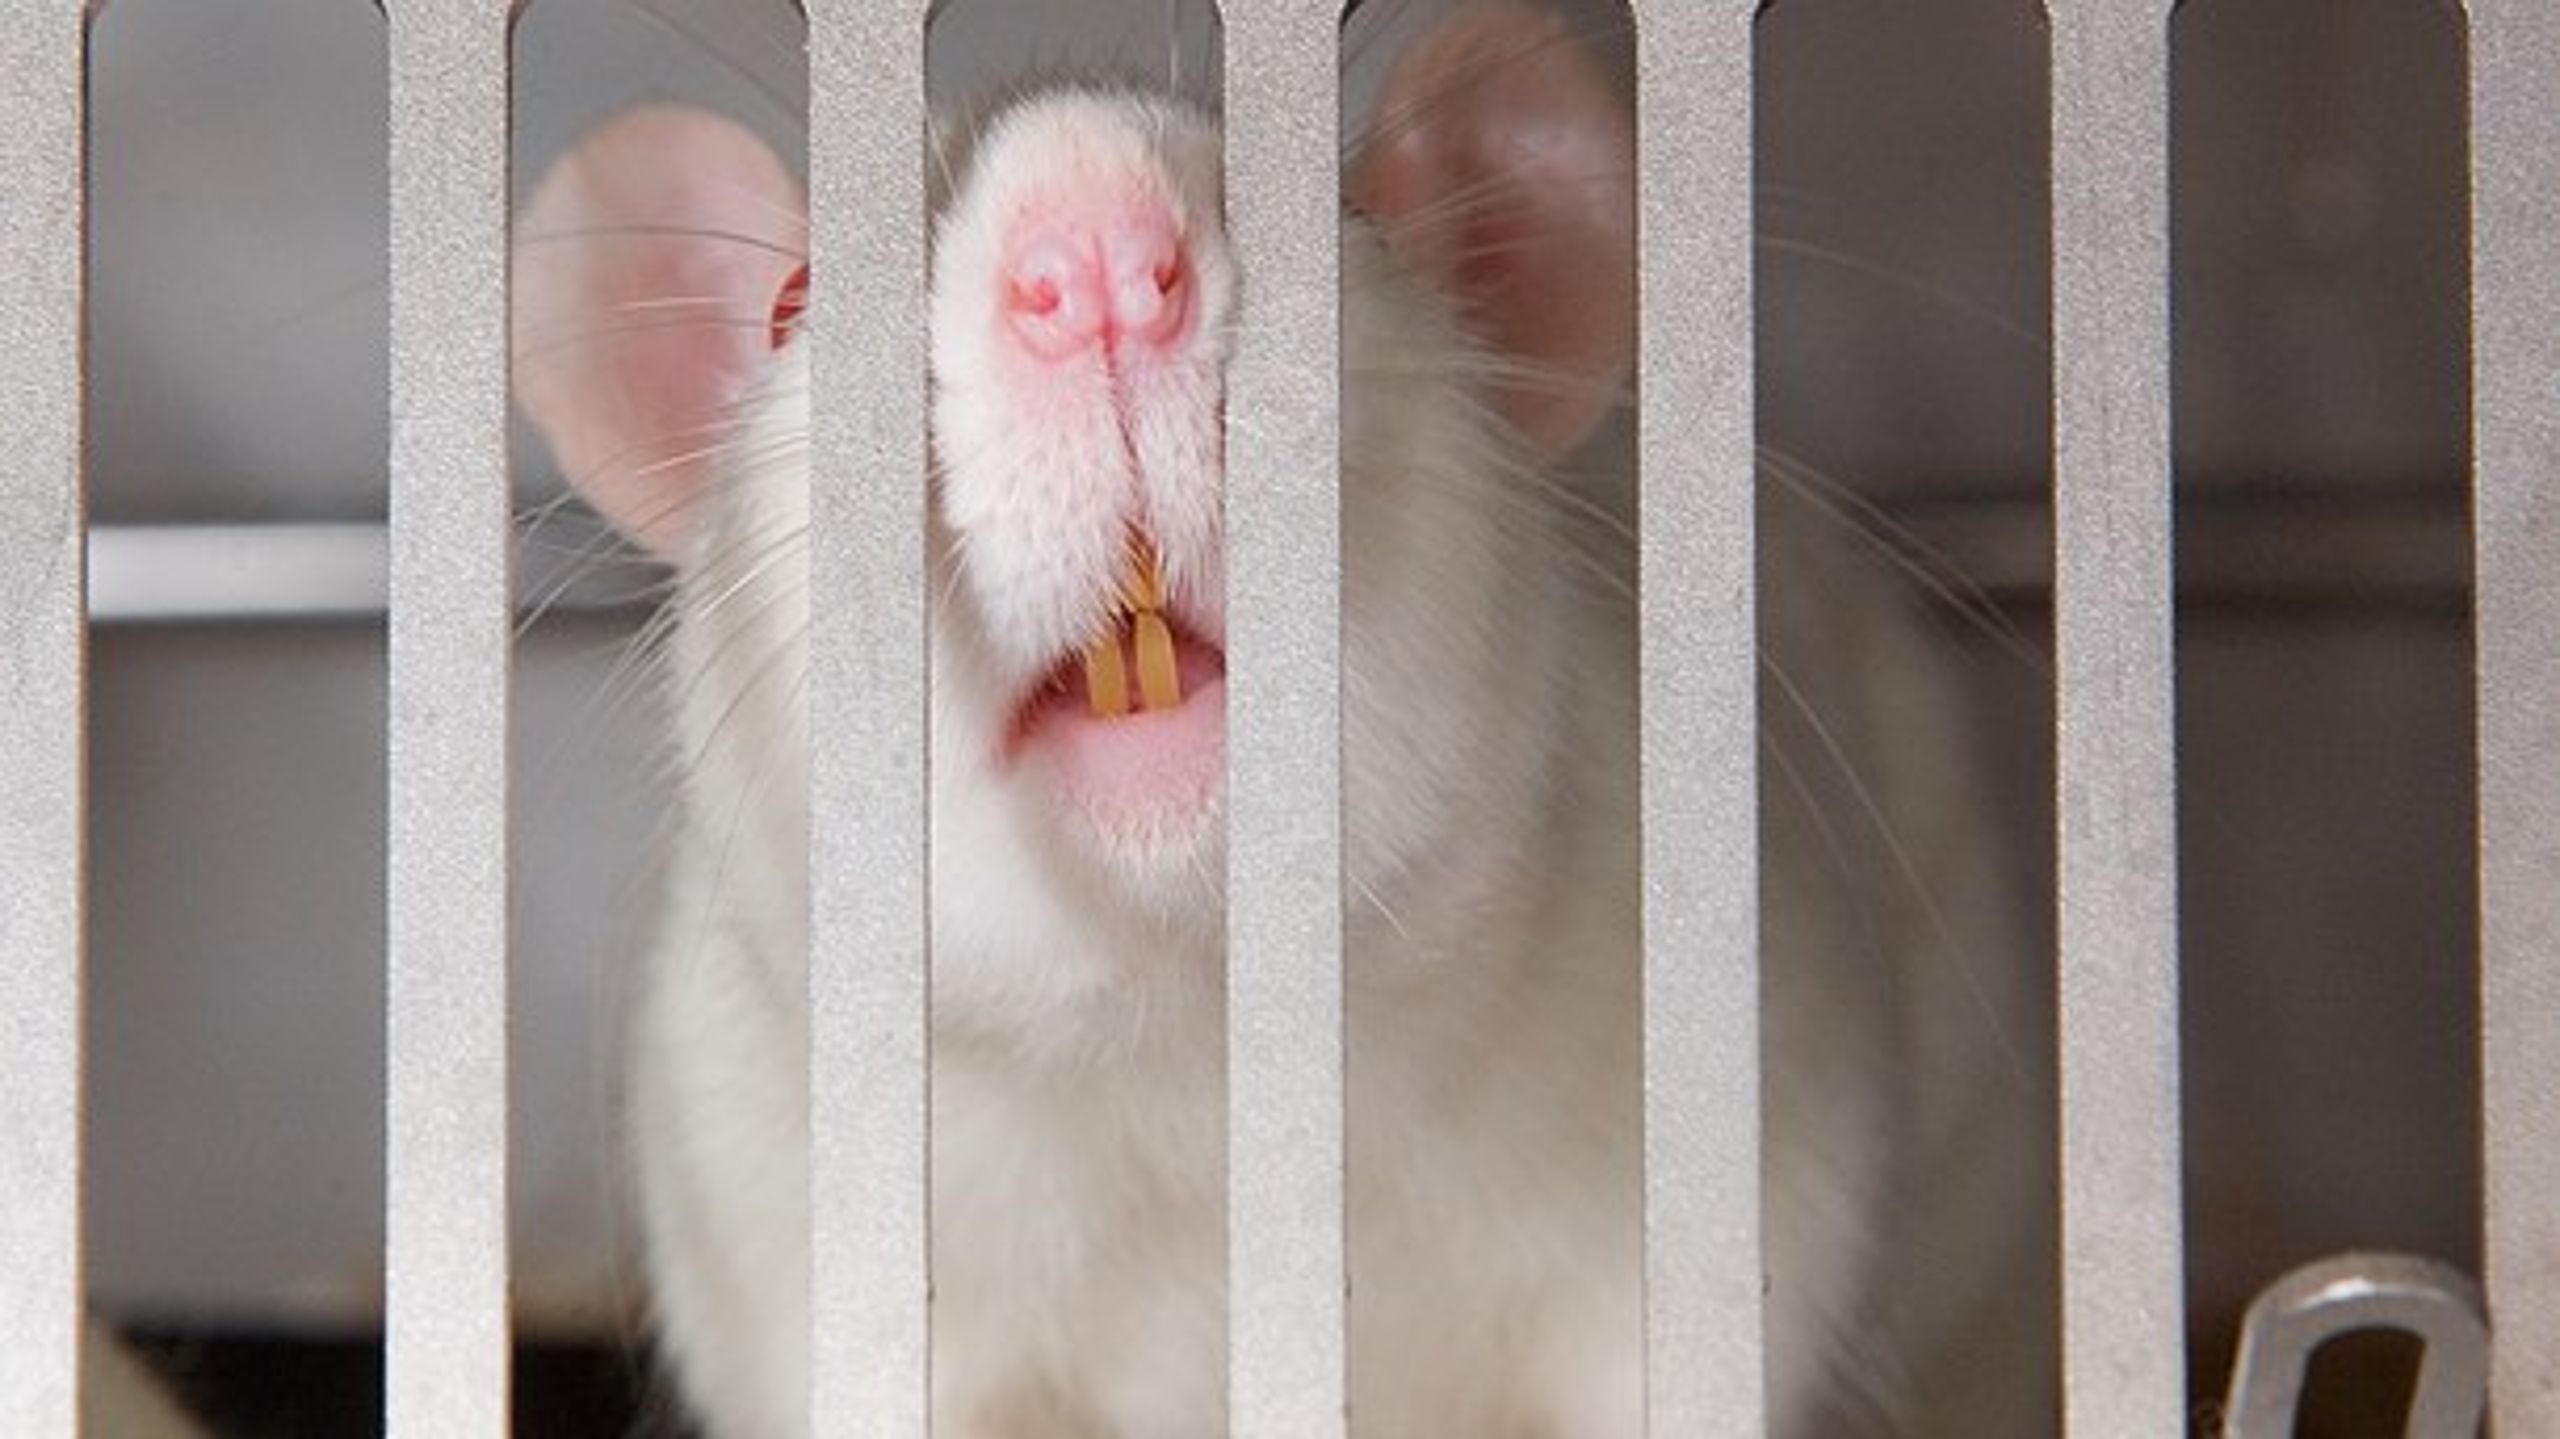 EU-regler forbyder kosmetikbranchen at bruge dyreforsøg på blandt andet rotter, marsvin og kaniner, når de skal have deres produkt godkendt i Unionen. Ny dom kigger nærmere på reglerne i praksis.